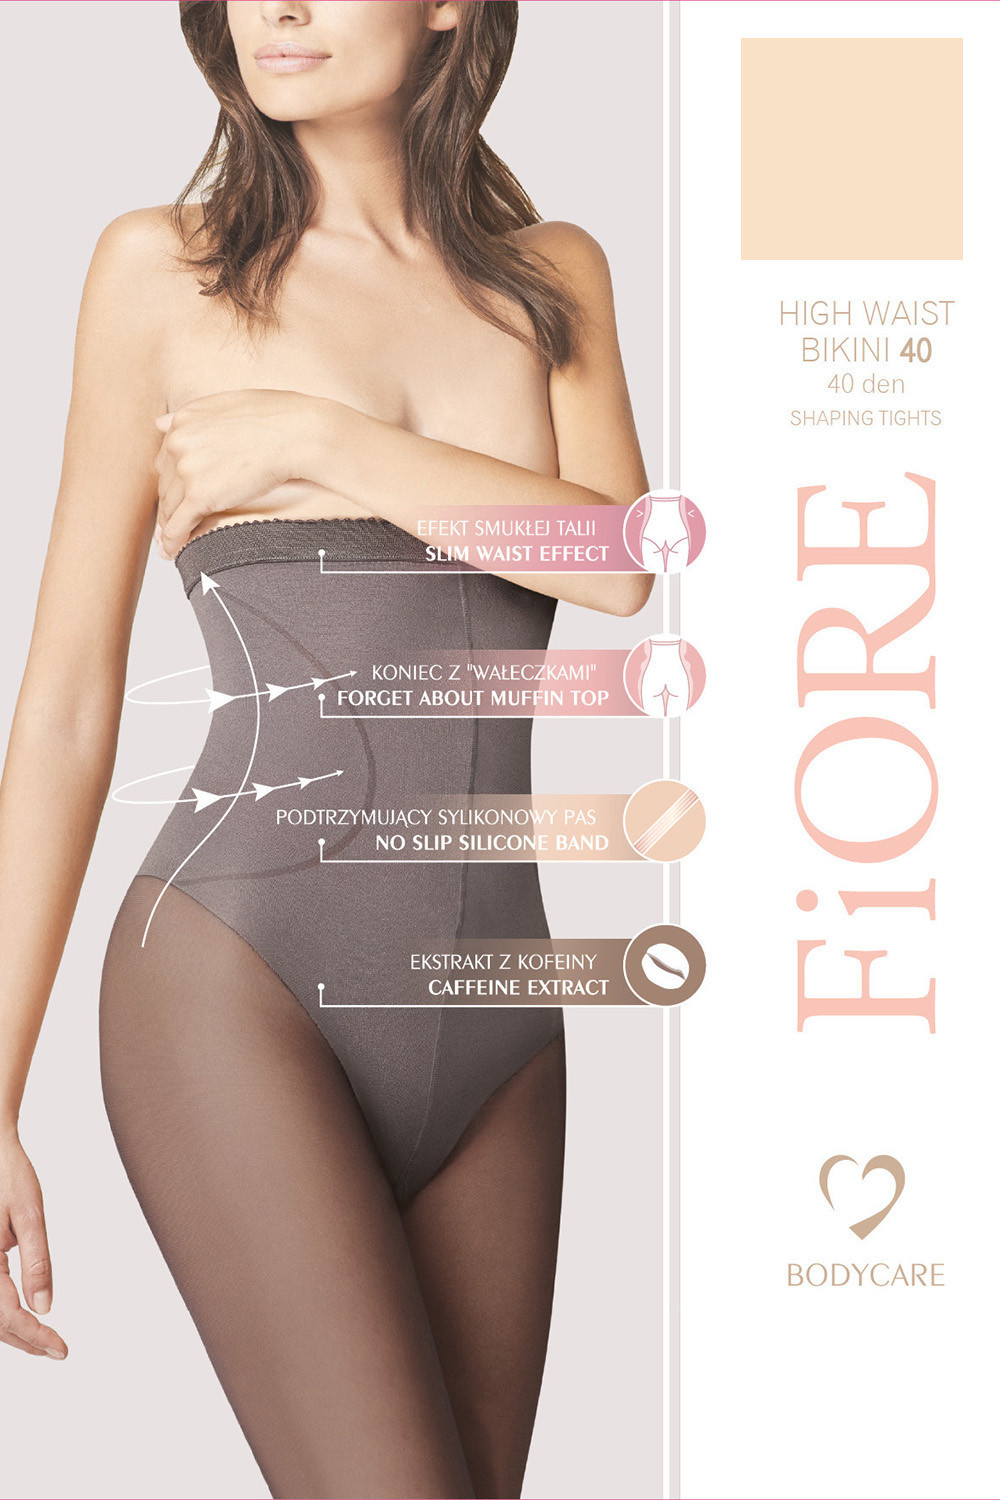 Fiore High Waist Bikini 40 den M5219 kolor:light natural 3-M